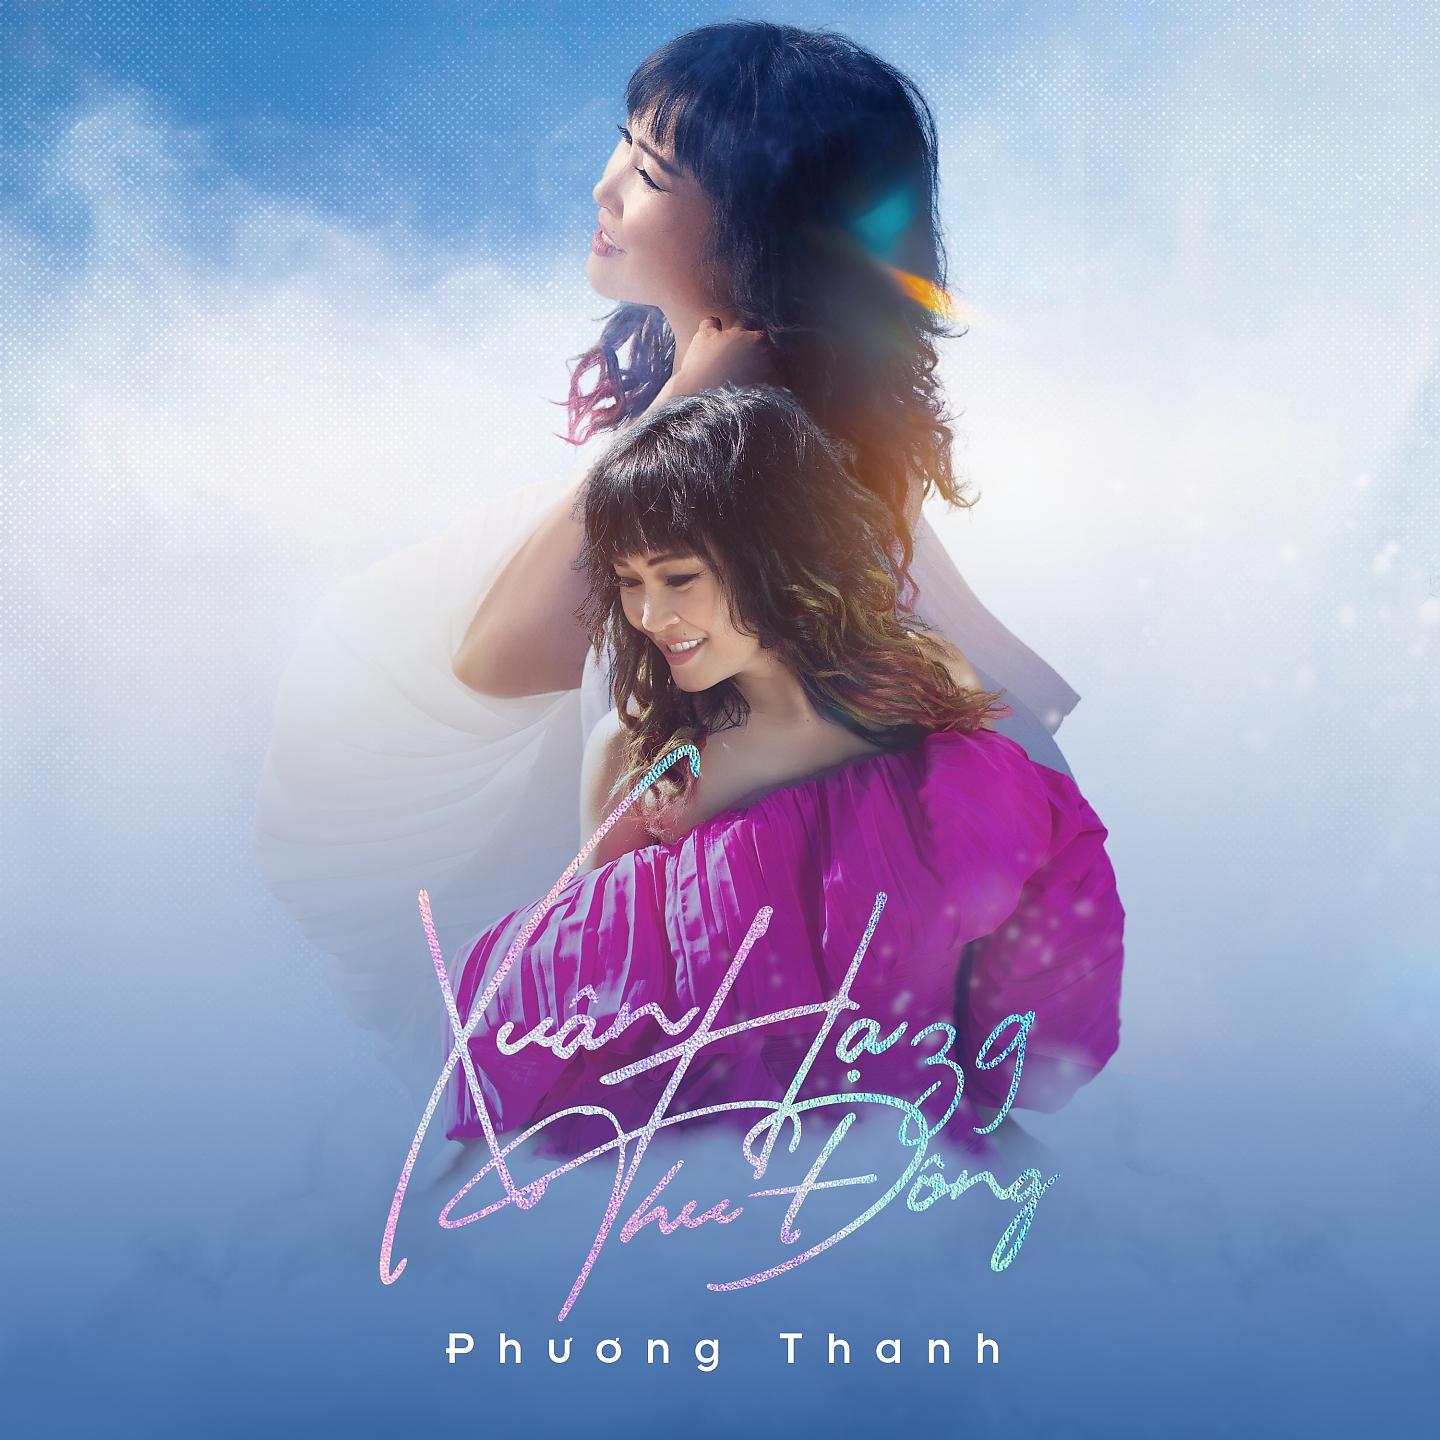 Постер альбома Xuân Hạ Thu Đông 39